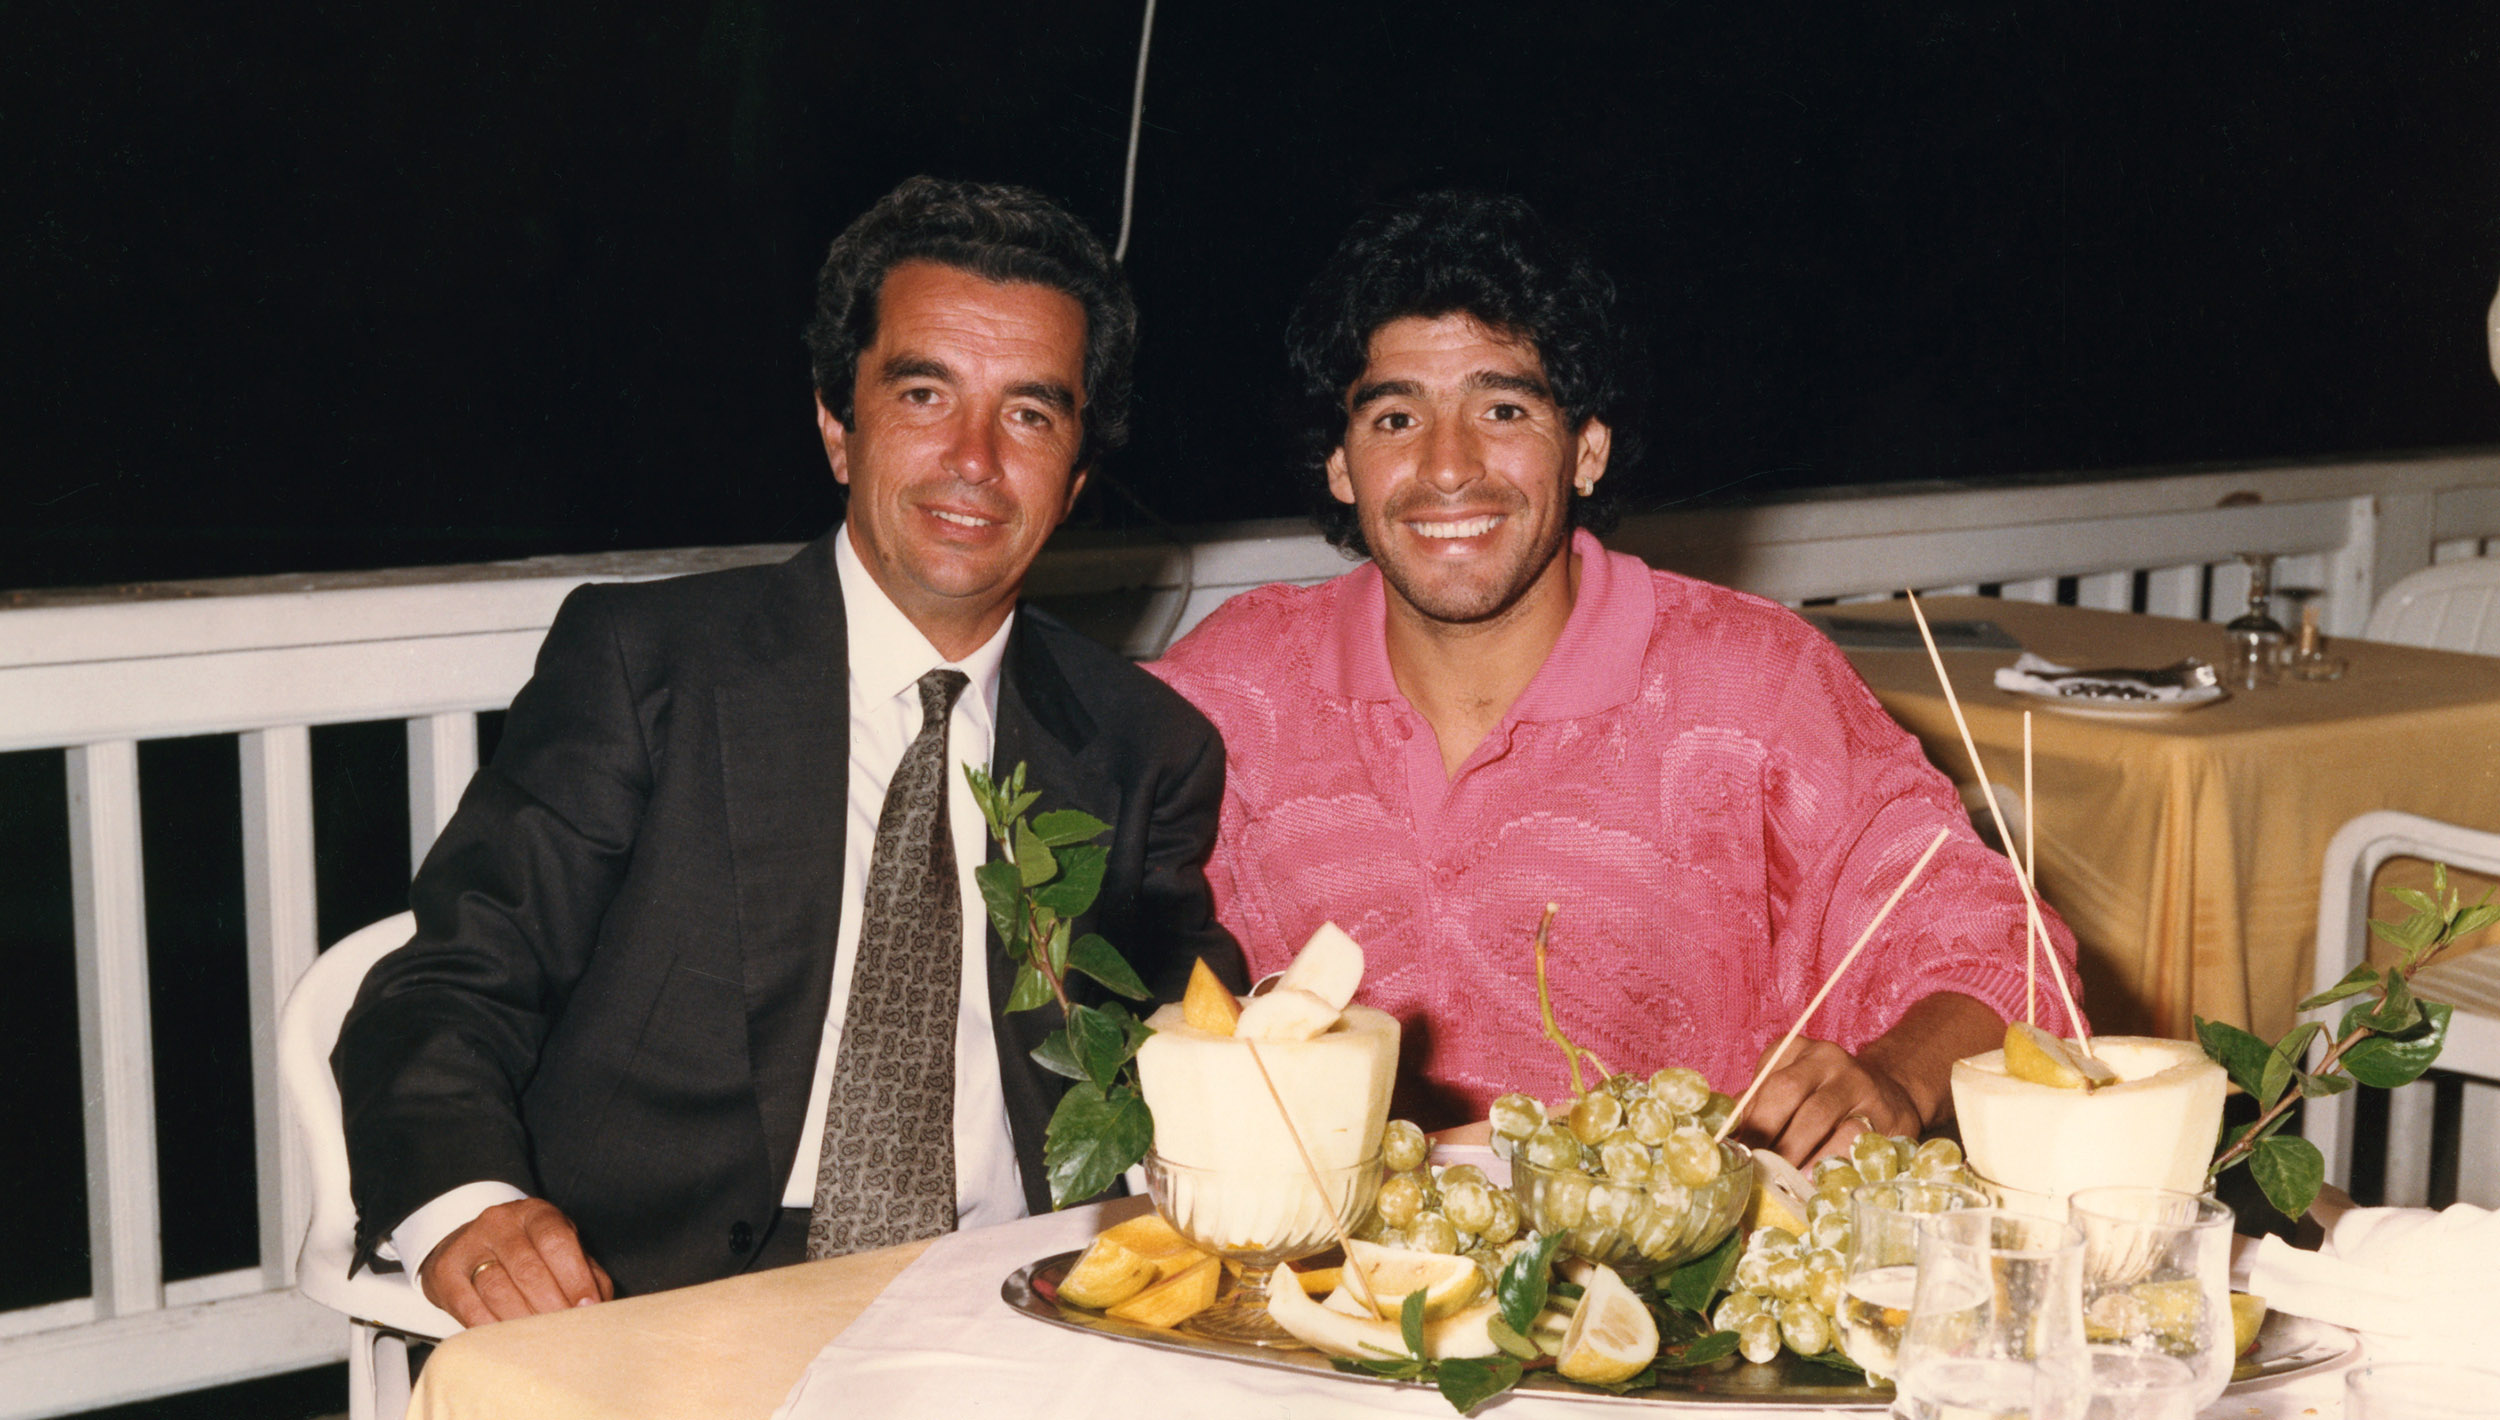 Henri Chenot with a special guest, Diego Armando Maradona